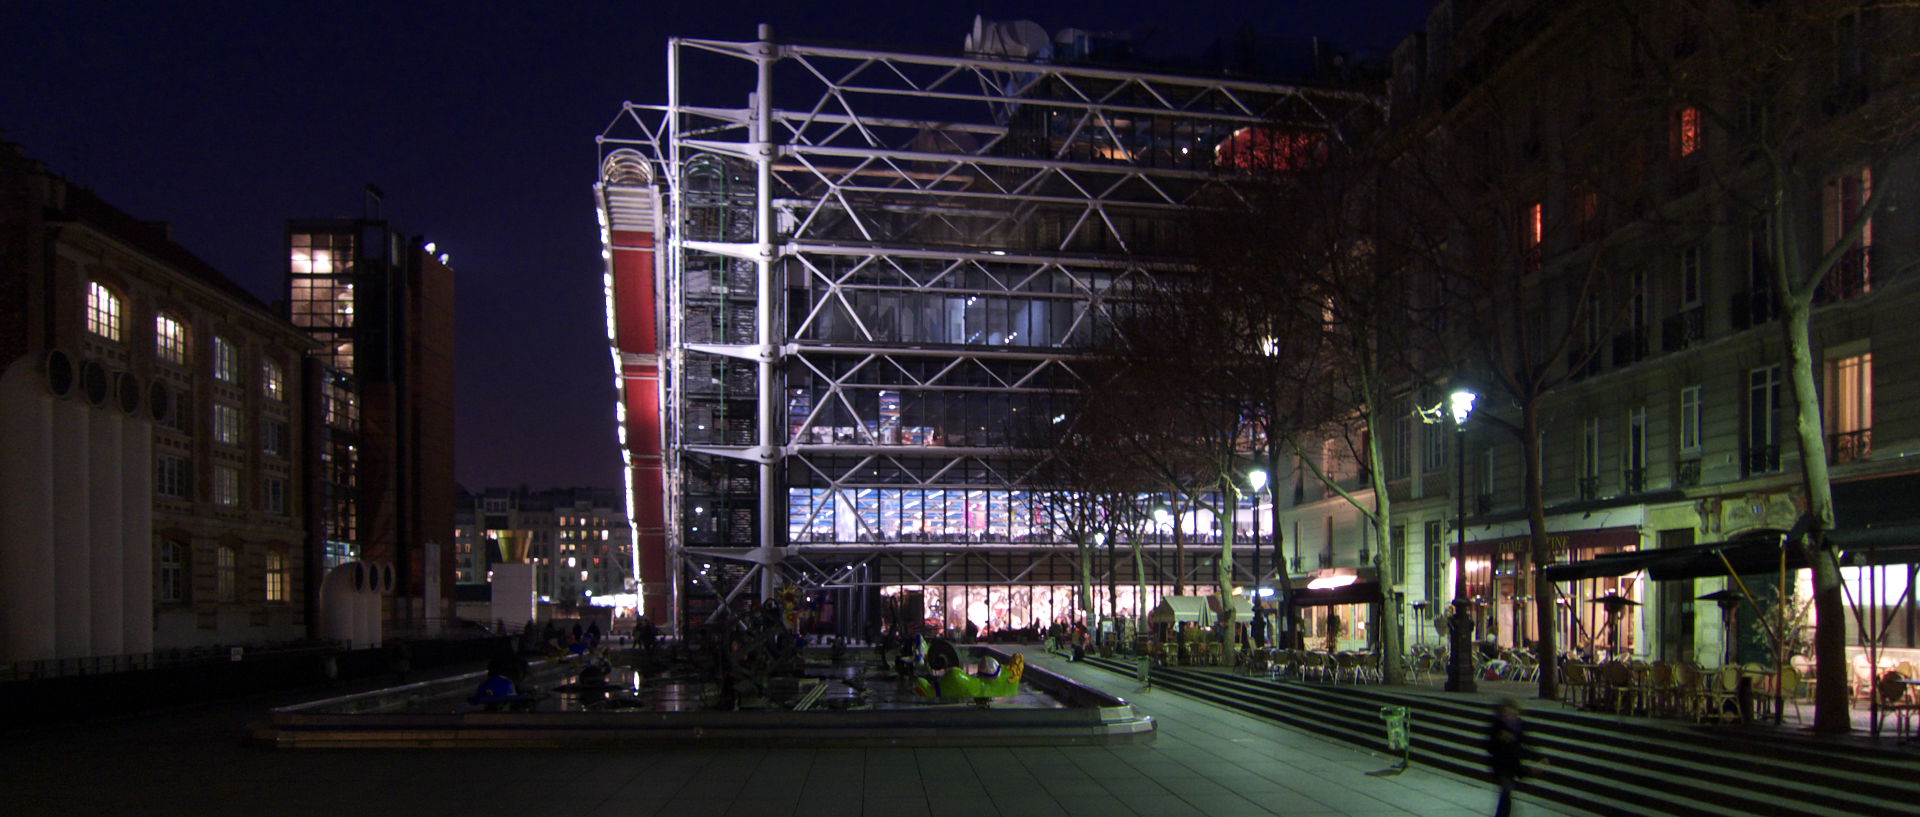 Vendredi 30 janvier 2009, 18:27, le centre Georges-Pompidou, à Paris.